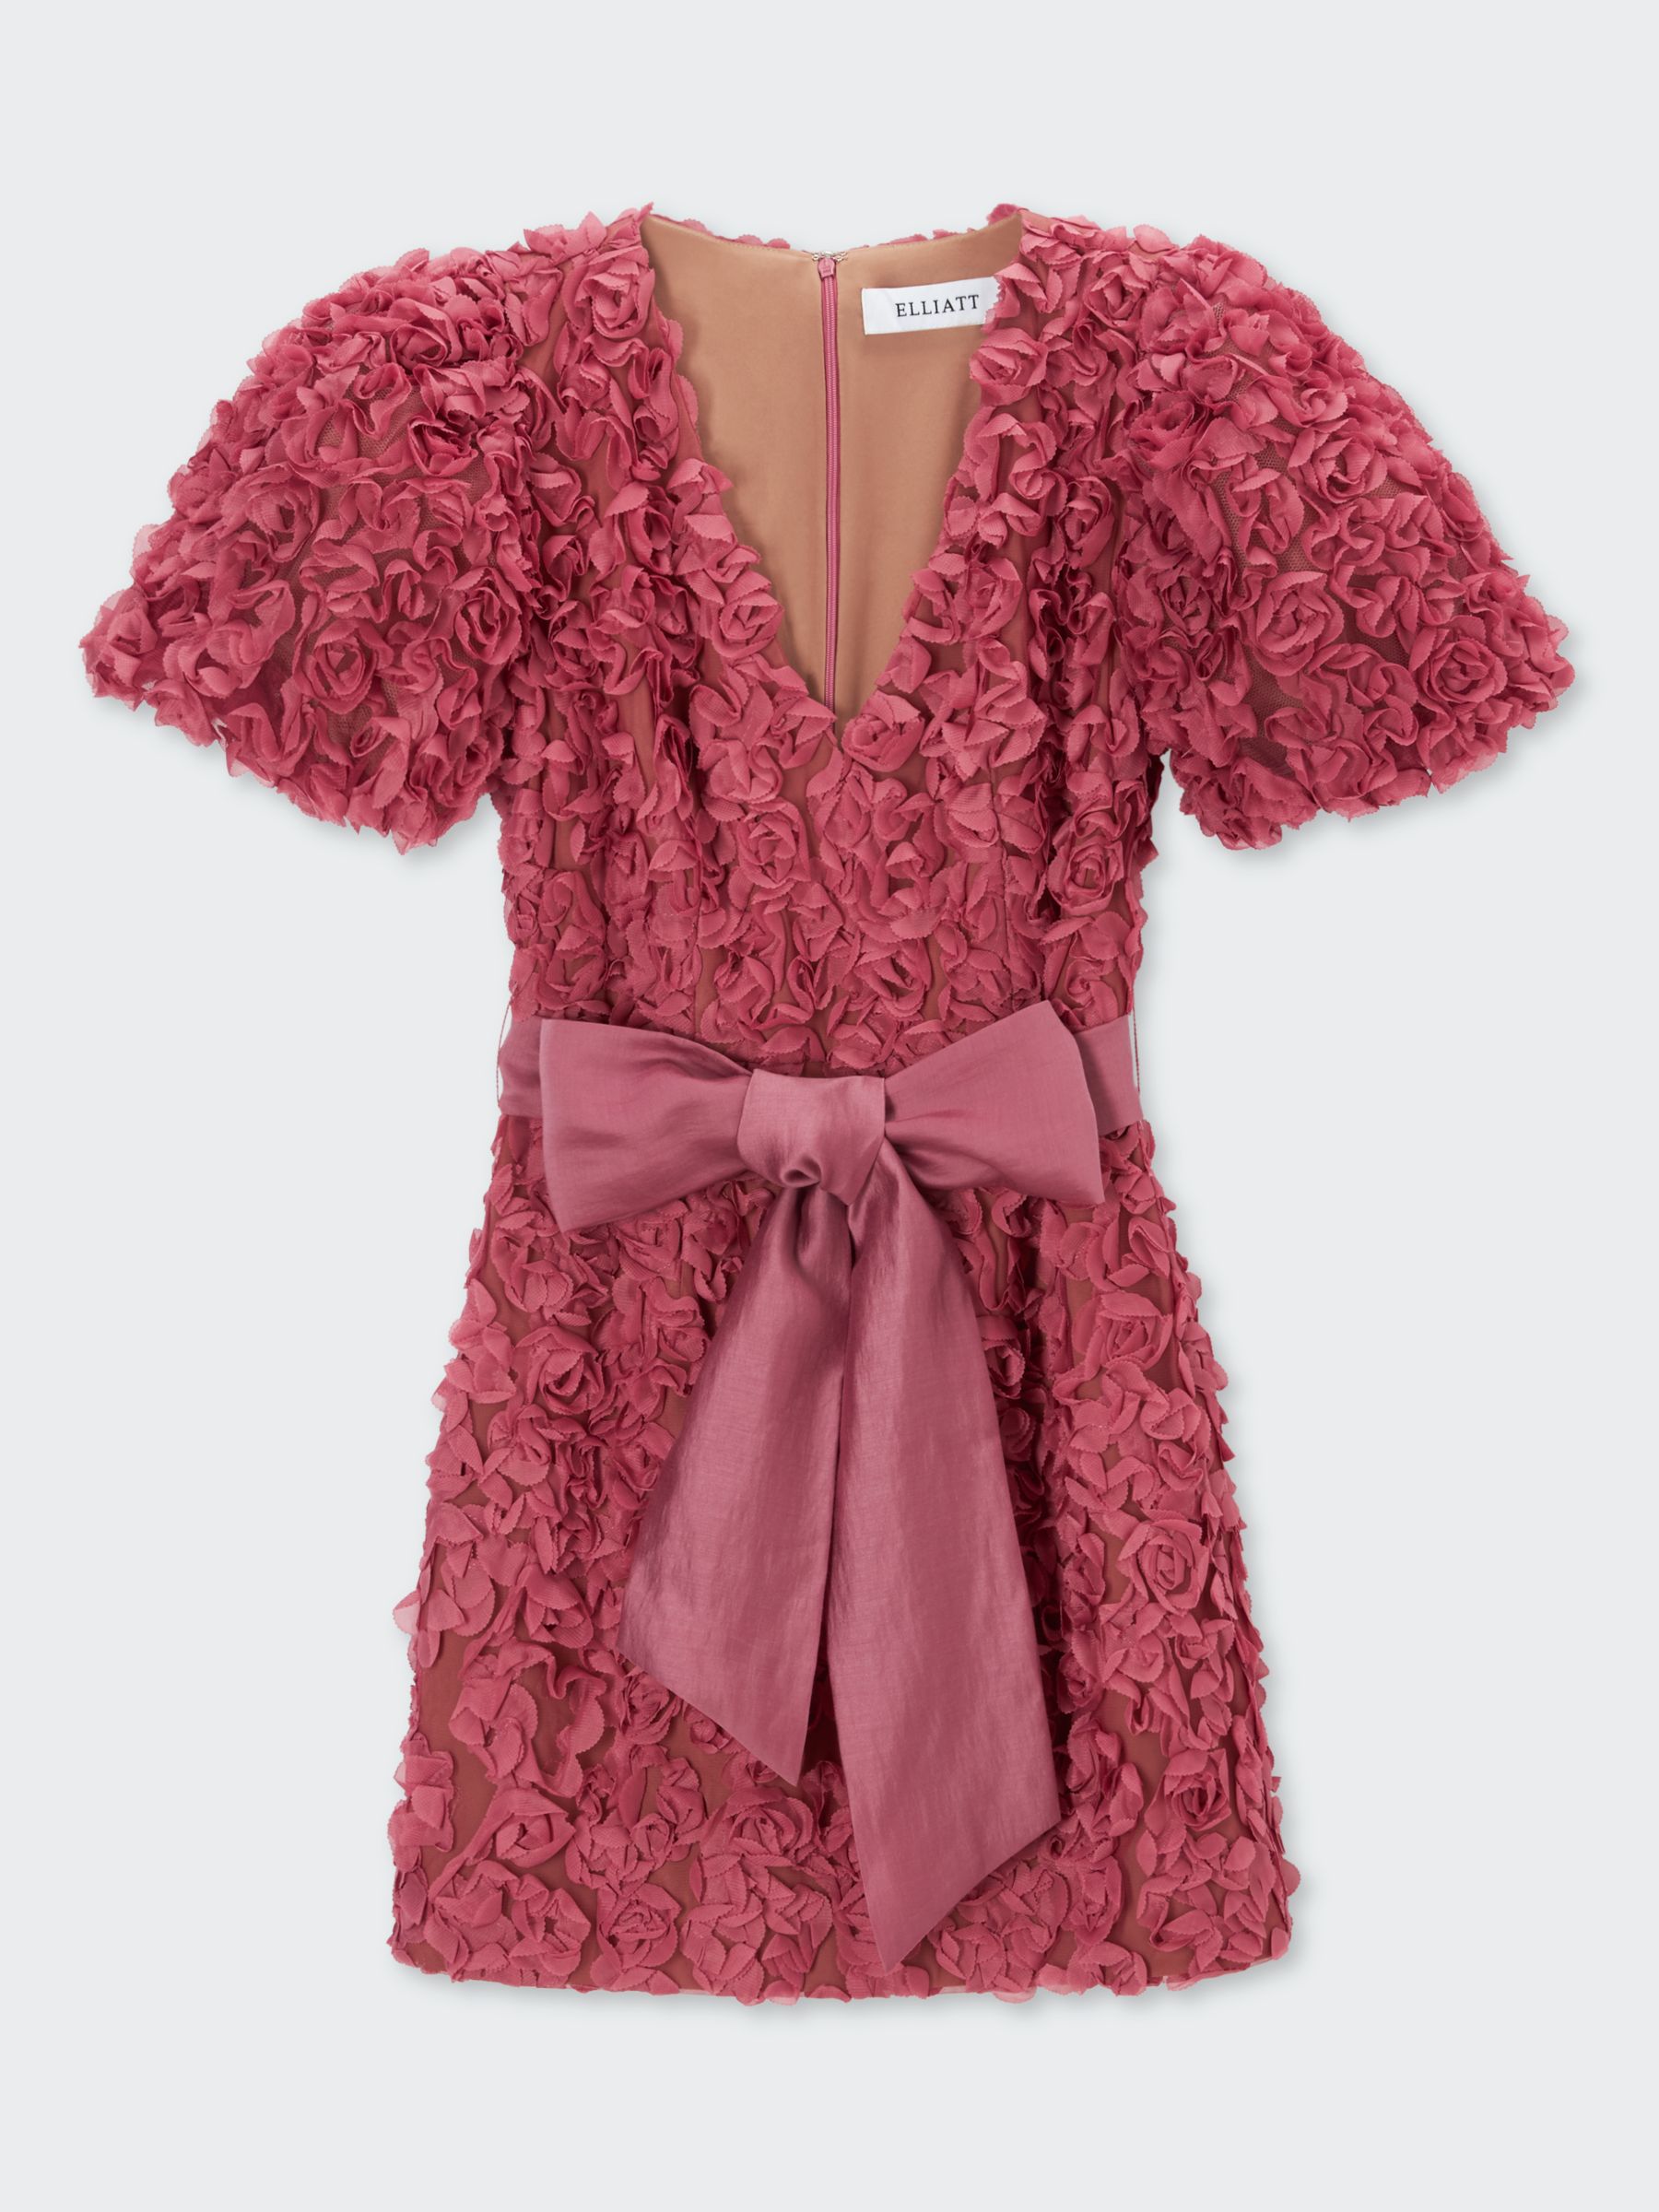 Elliatt Adoration Short Puffed Mini Dress, Raspberry, L